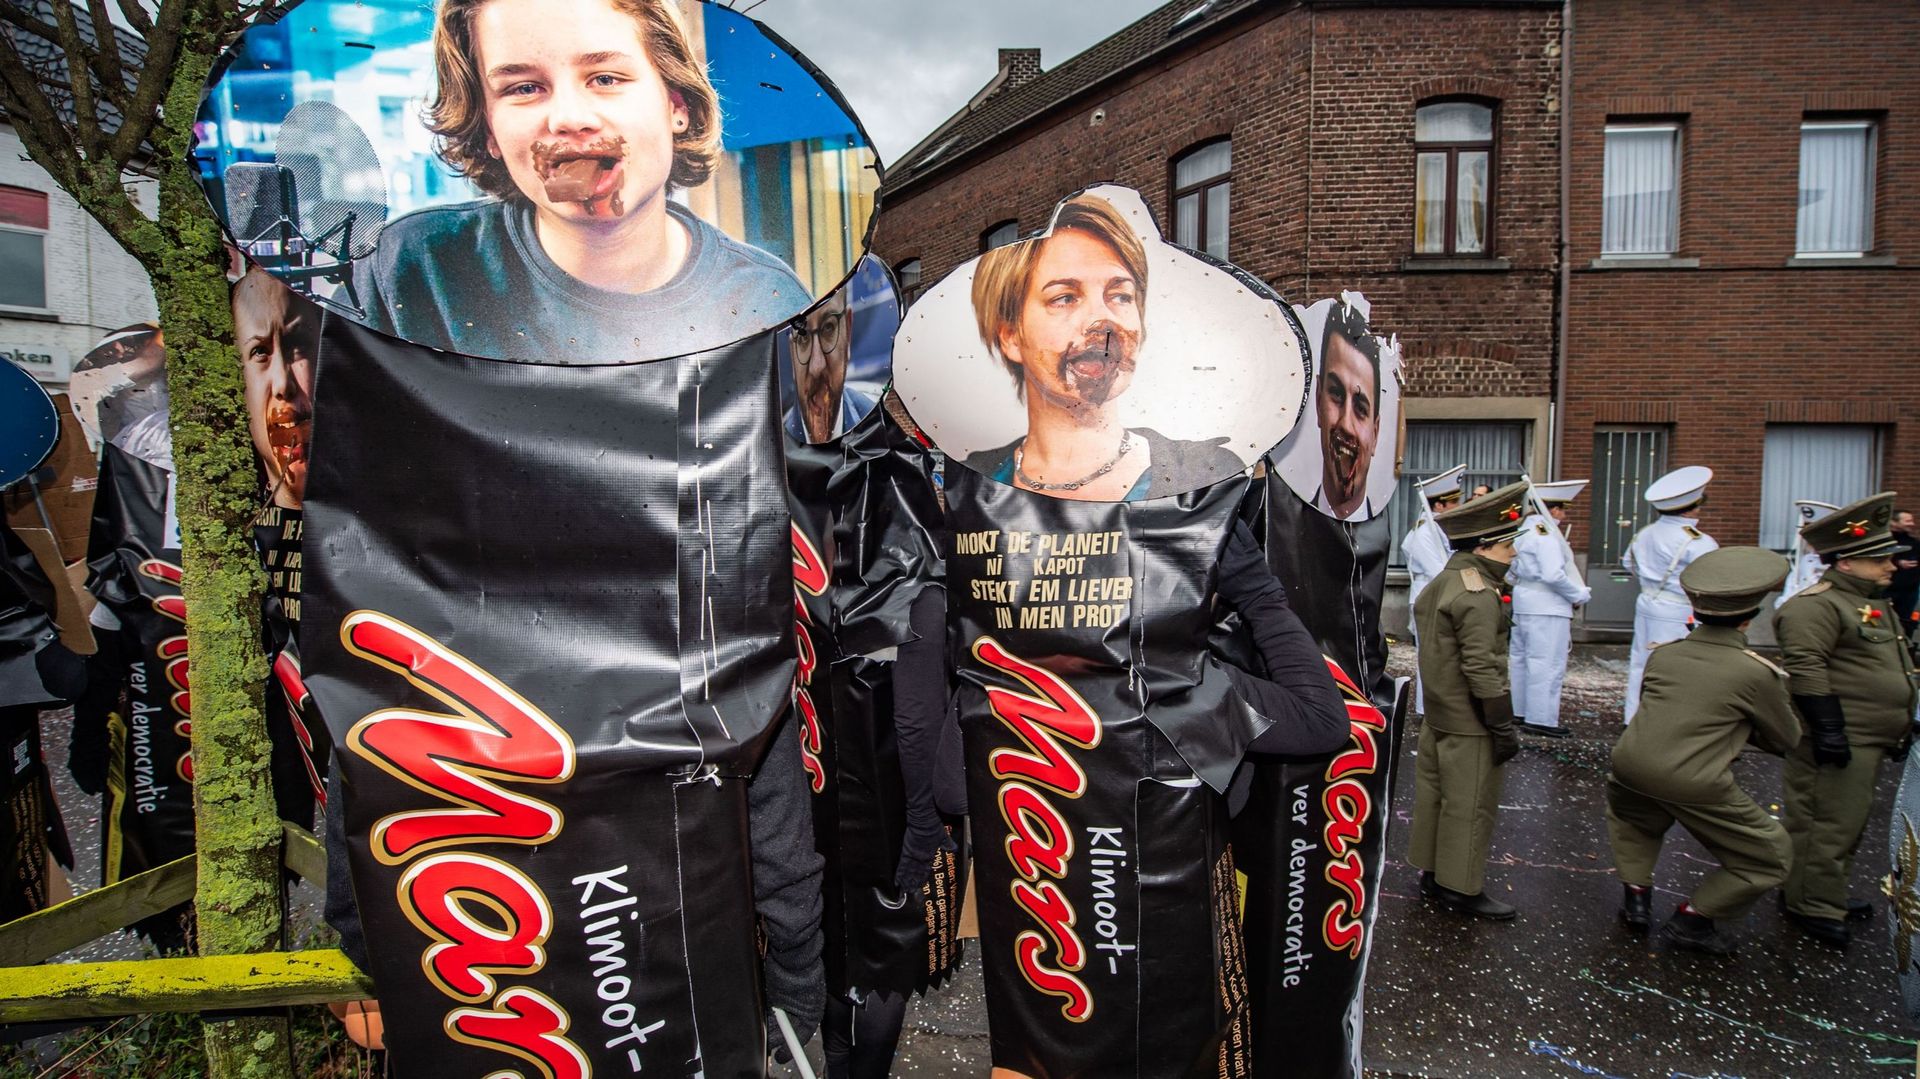 Joke Schauvliege, Anuna De Wever et la marche pour le climat brocardées au carnaval d'Alost